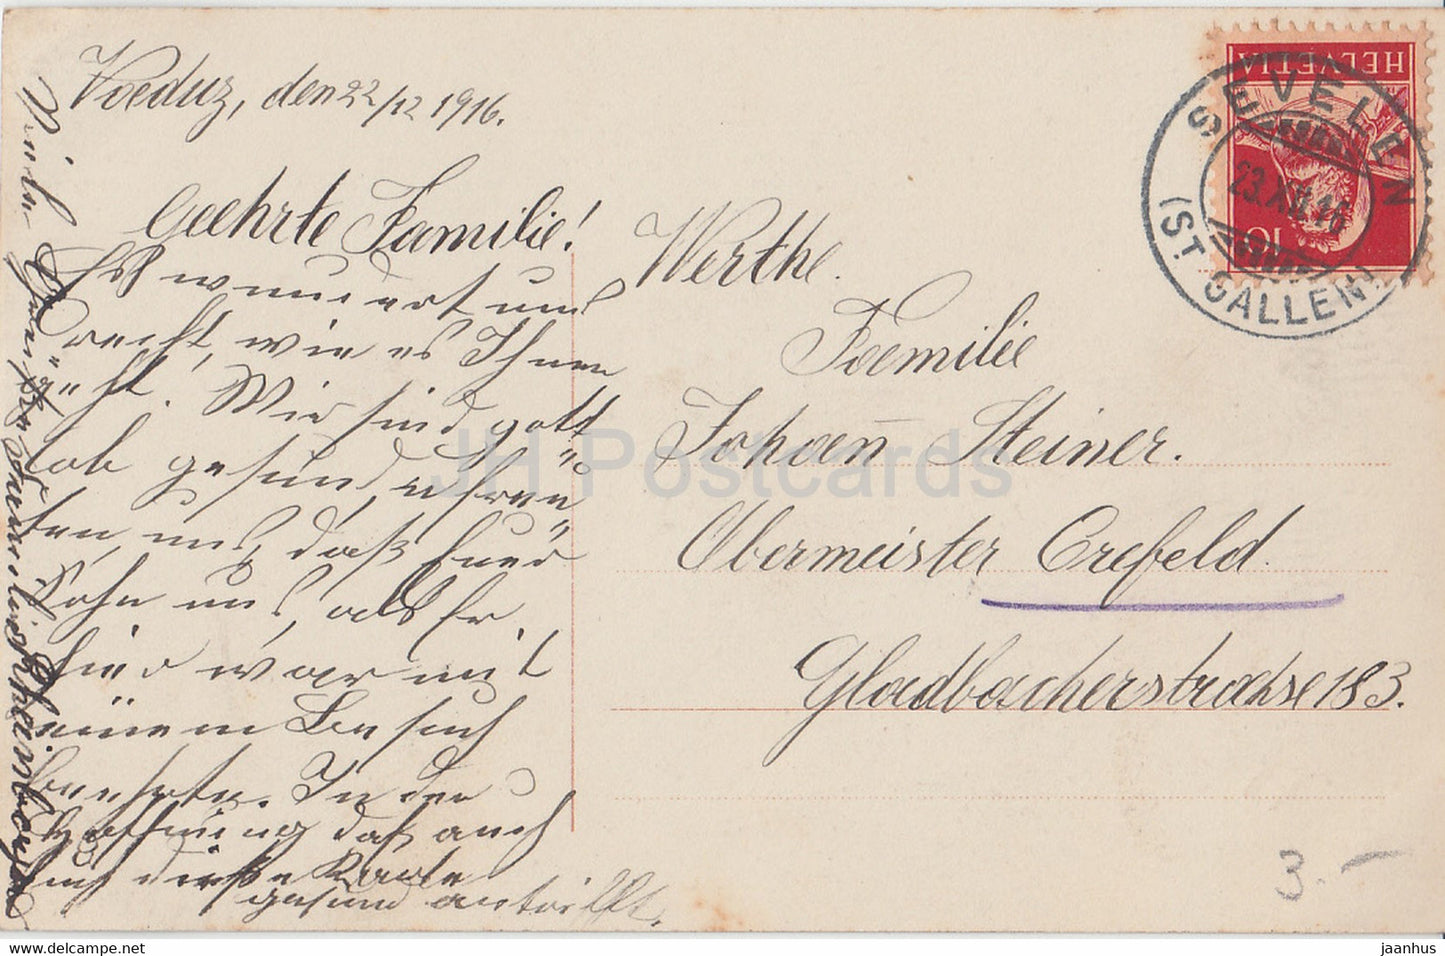 New Year Greeting Card - Herzinnigen Gluckwinsche zum neuen Jahre - EAS 649/1 - old postcard - 1916 - Germany - used